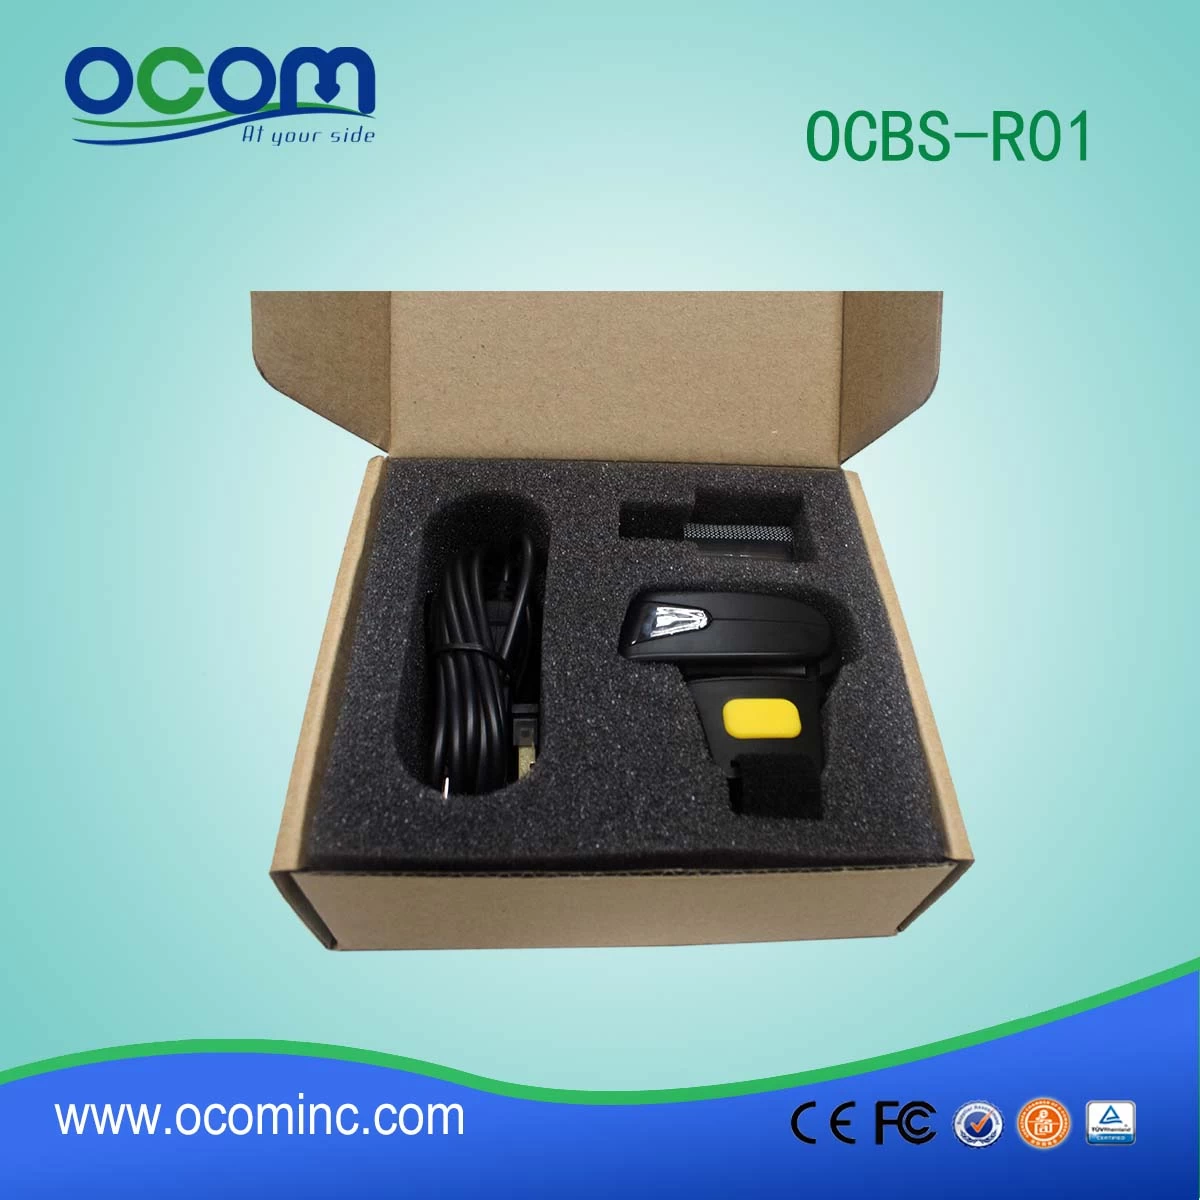 OCBS-R01 1D wireless bluetooth barcode scanner